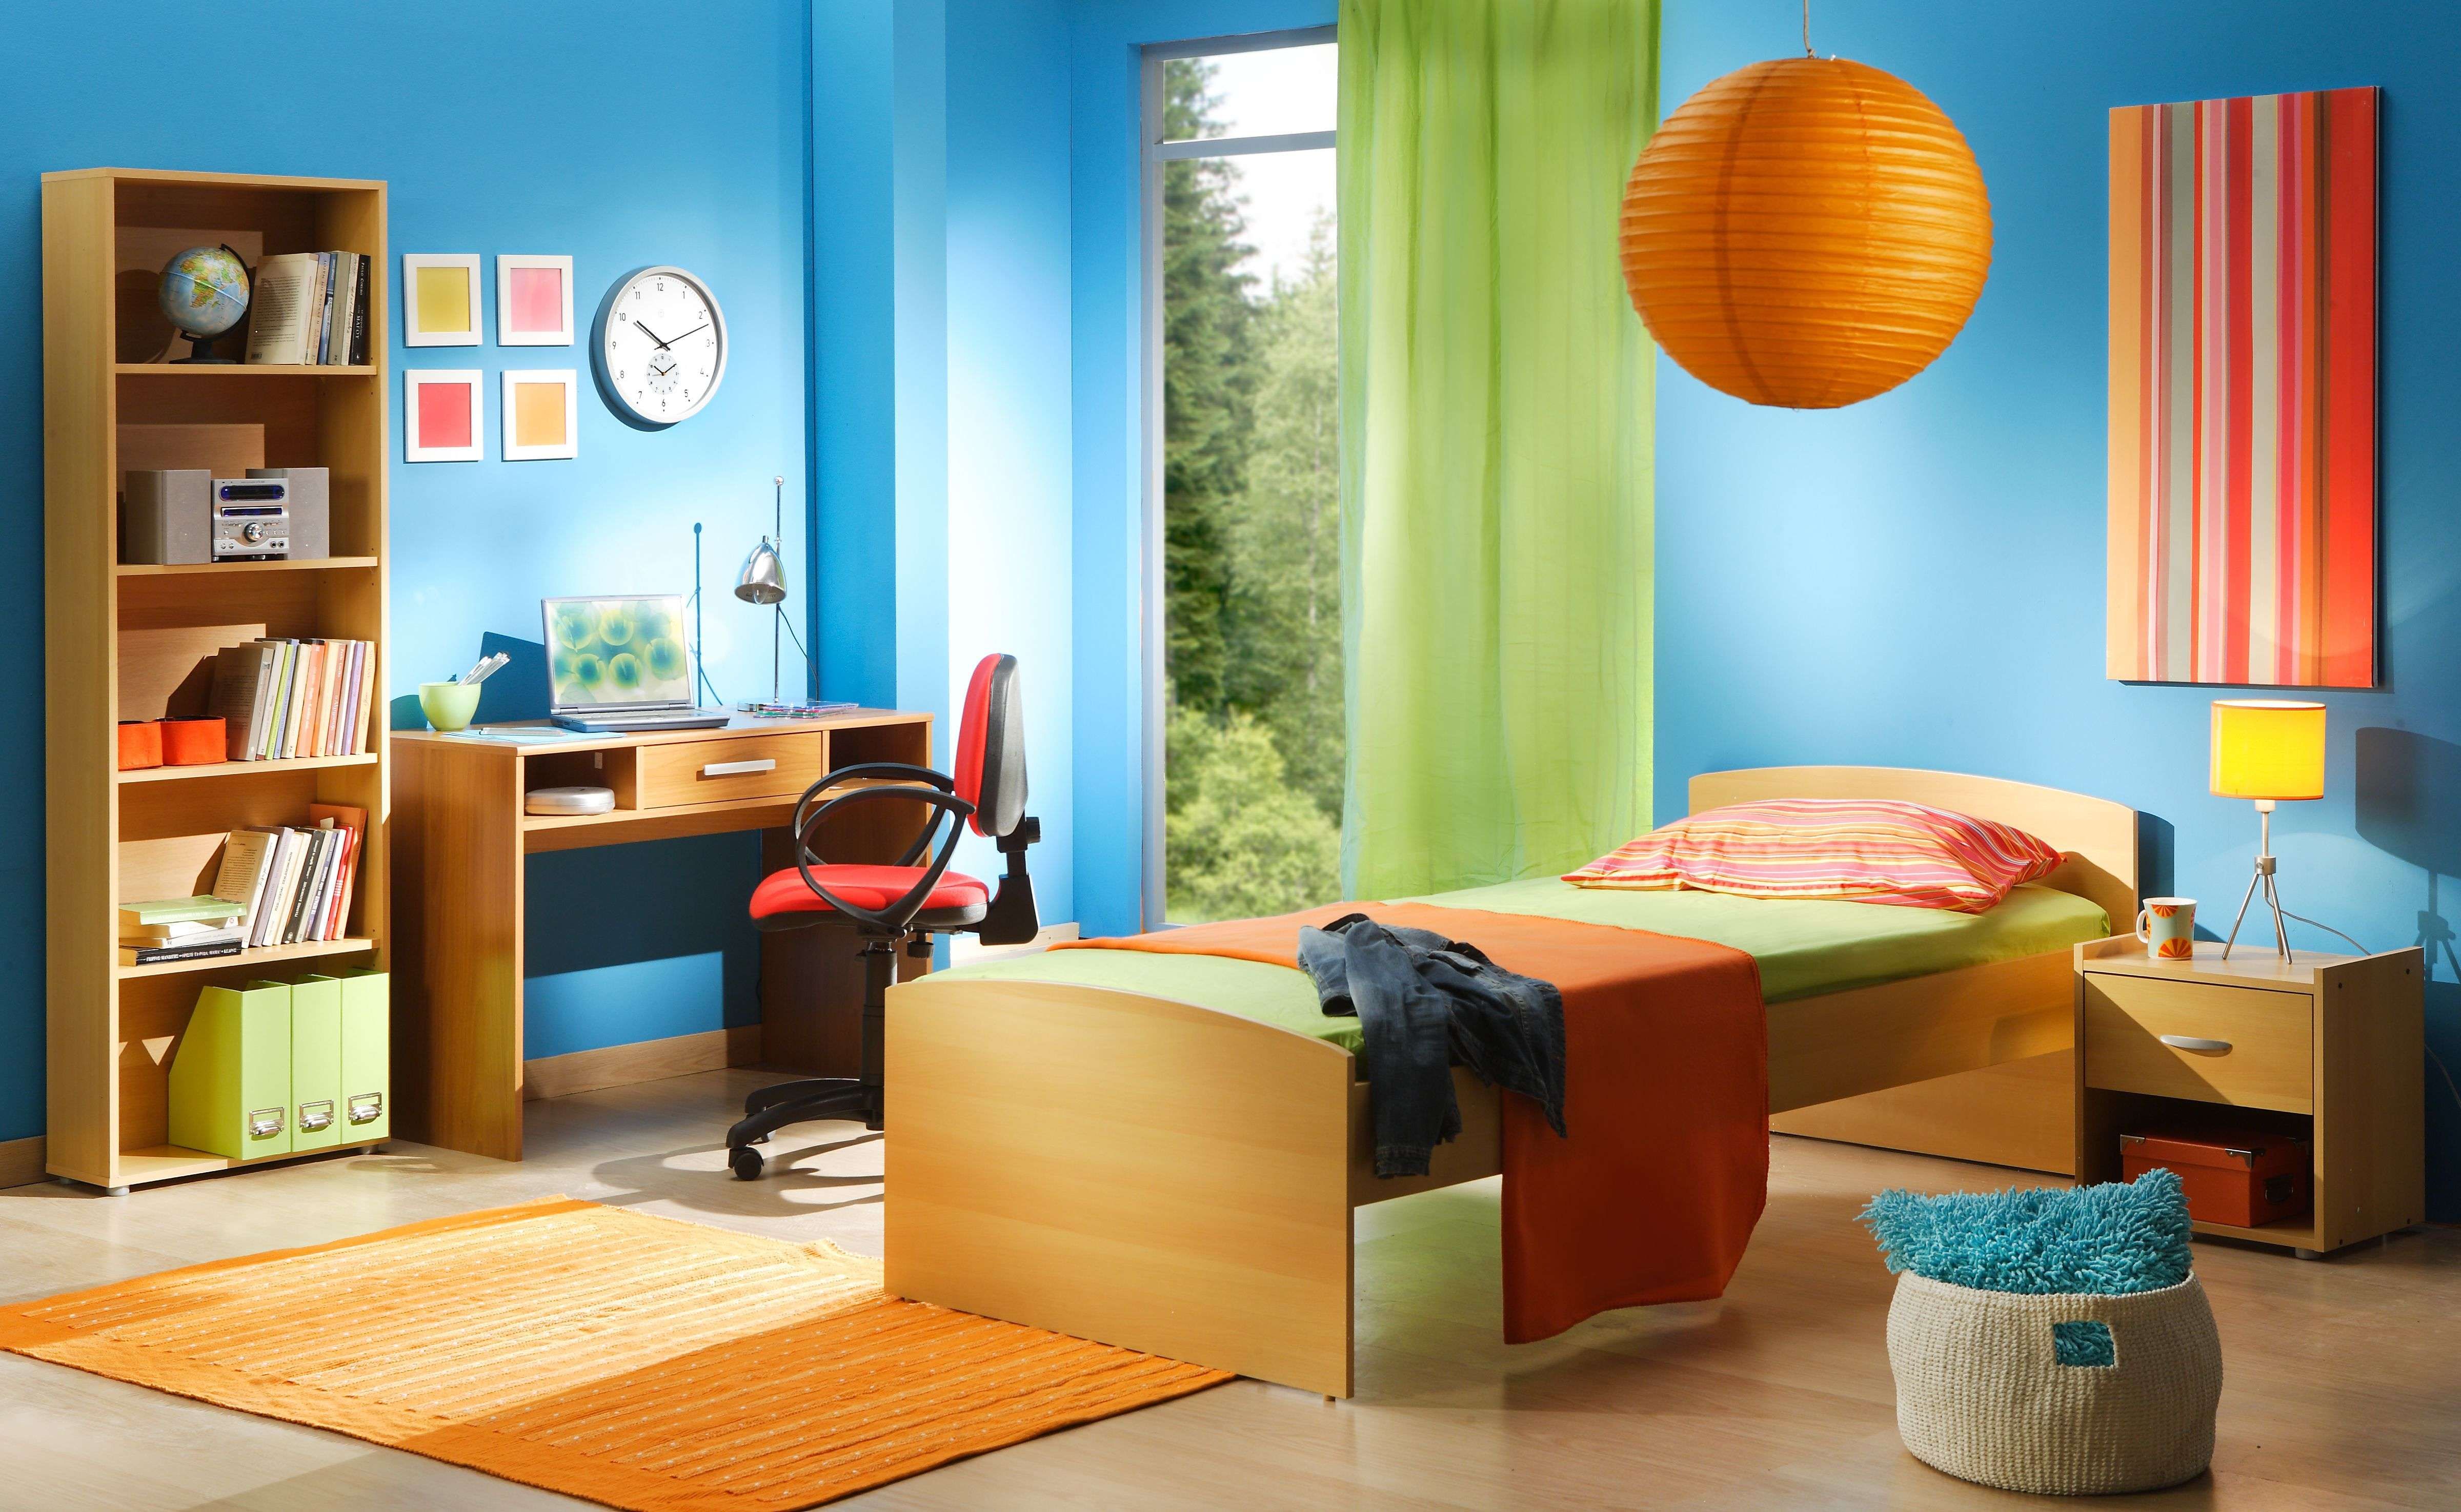 Cómo elegir el mobiliario para una habitación infantil